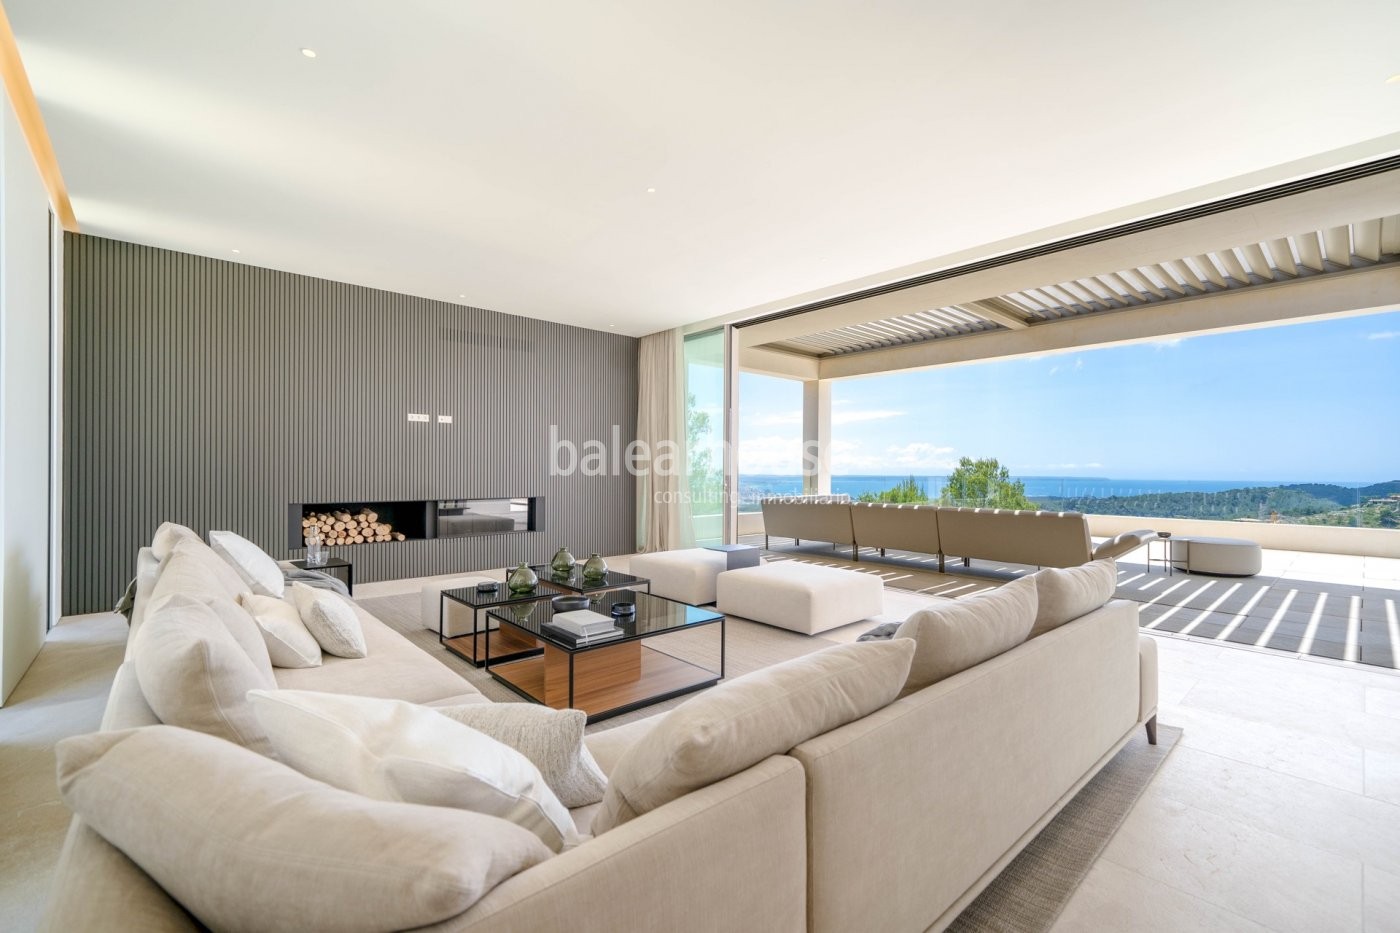 Vanguardia y diseño con impresionantes vistas al mar en esta villa de obra nueva en Son Vida.